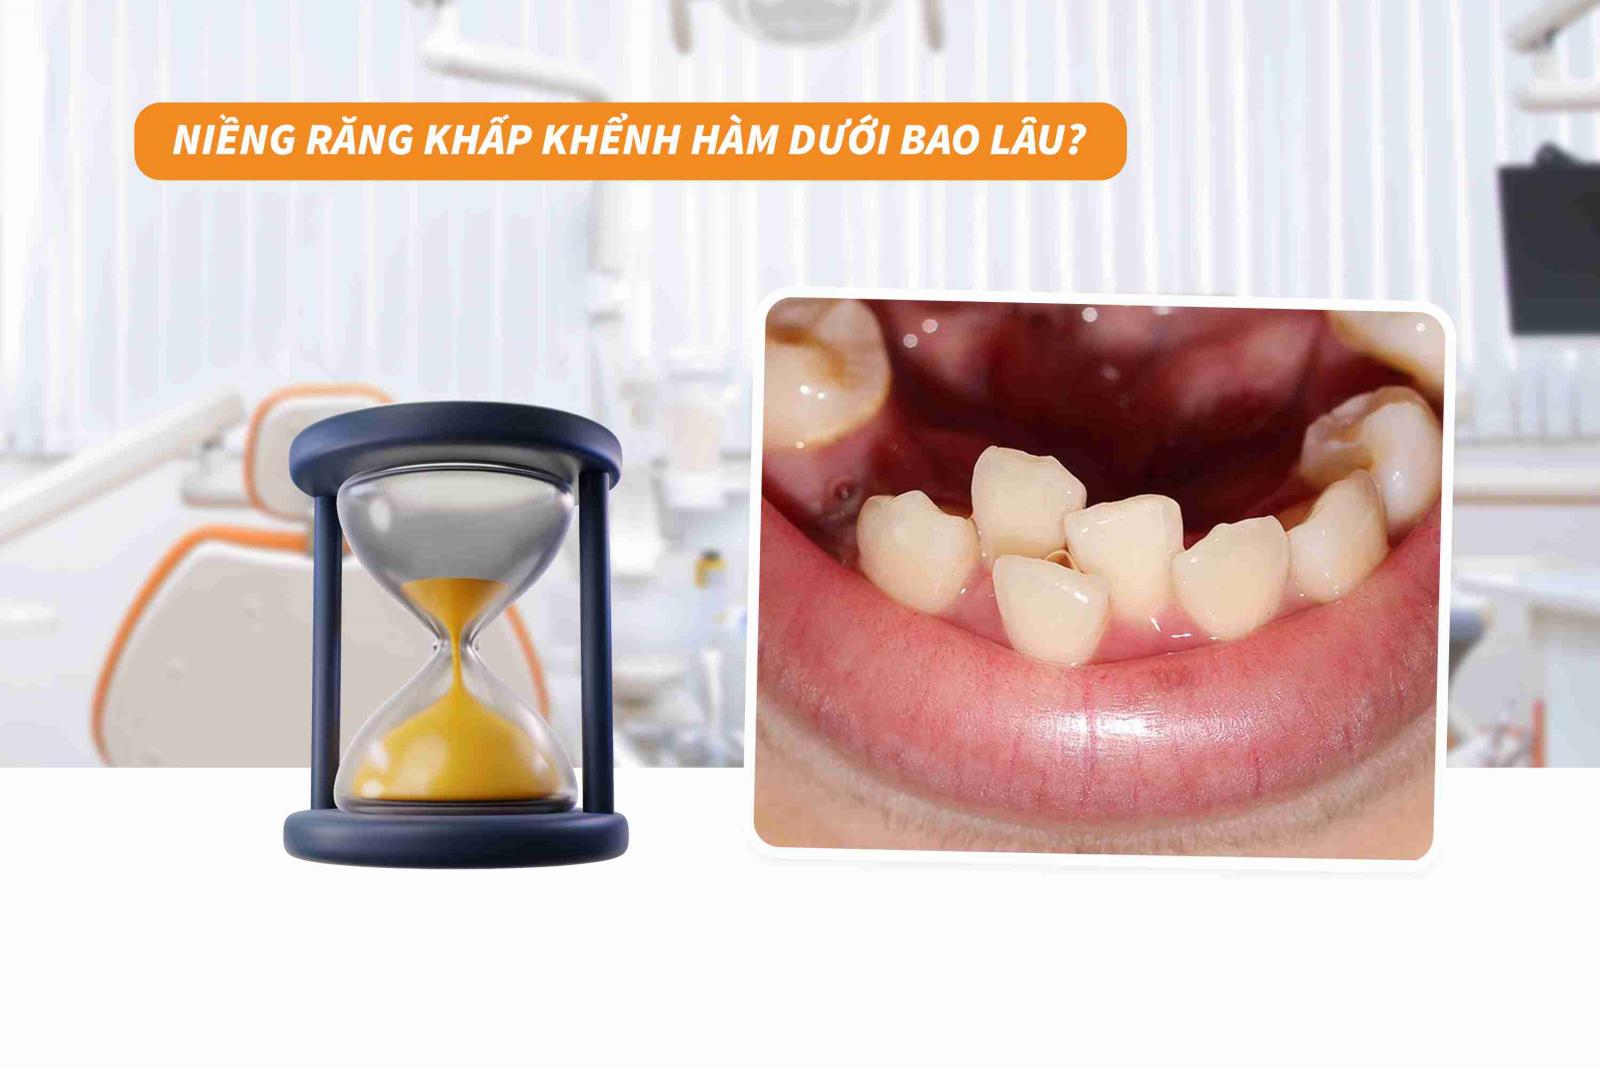 Niềng răng khấp khểnh hàm dưới bao lâu? 